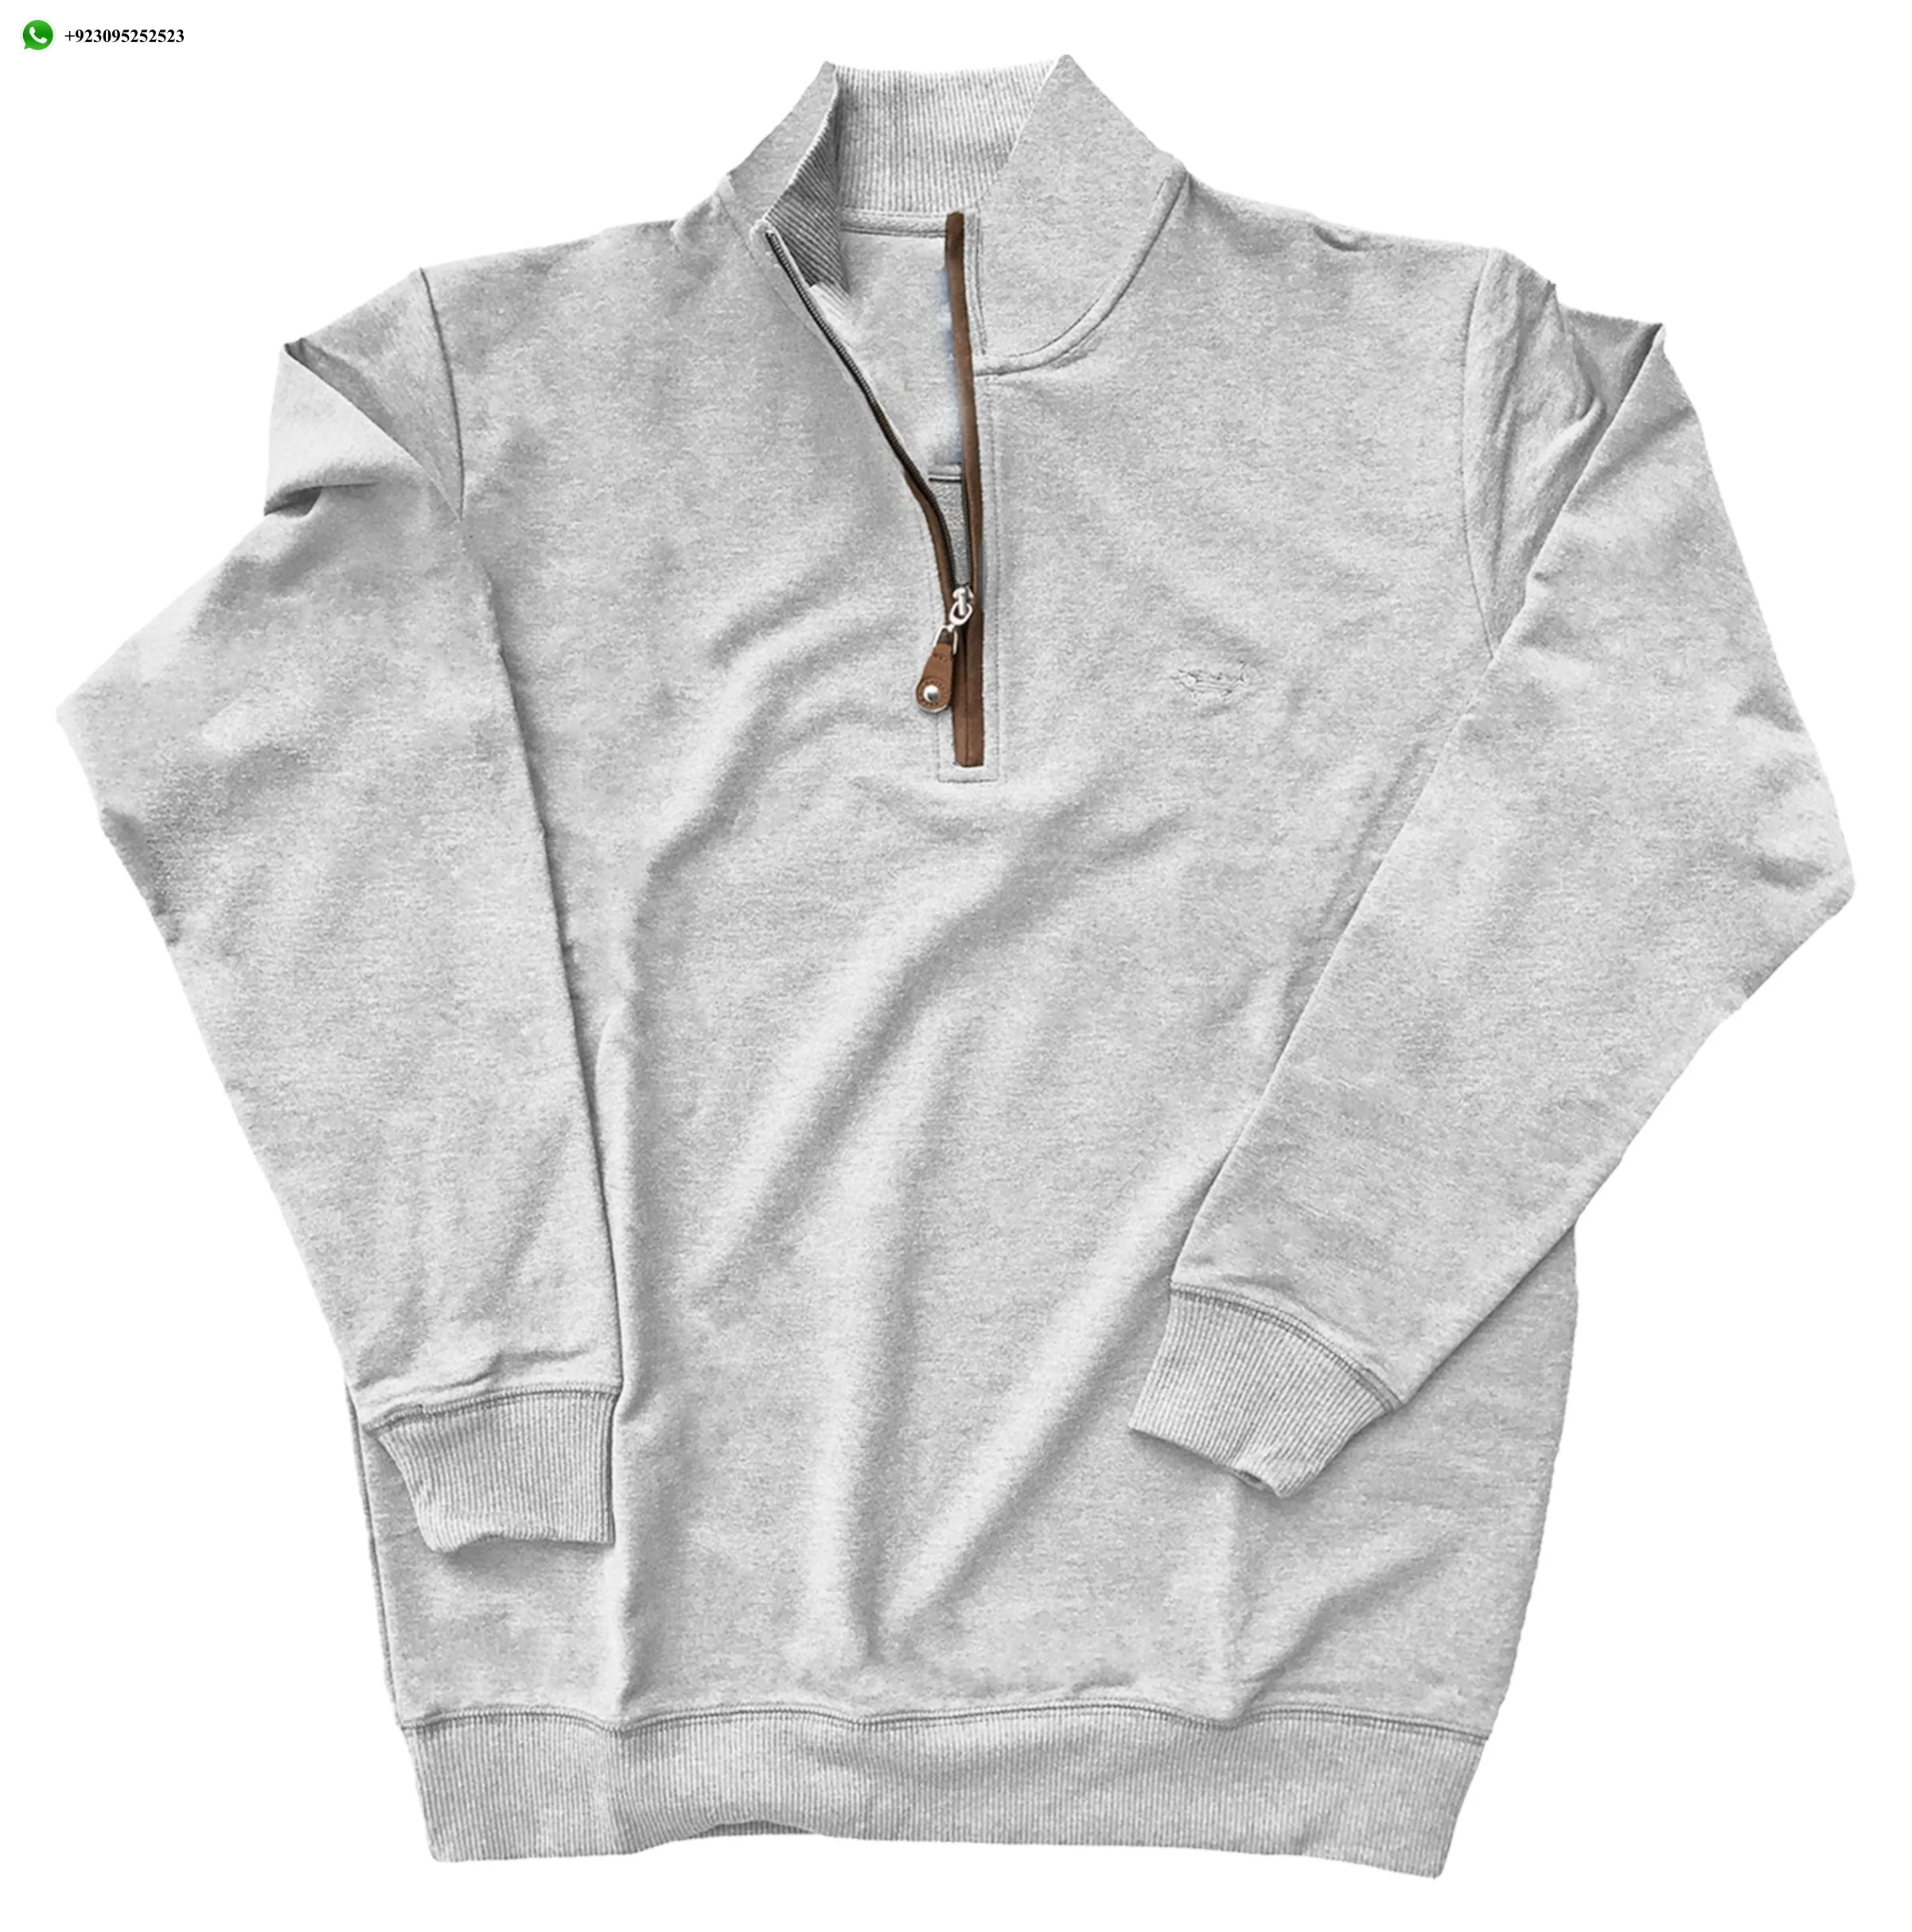 Custom OEM Cotton Wardrobe essential Outdoor-ready zip top Pullover 1/4 Zip Men Sweatshirt Low price Pullover Sweater 2024